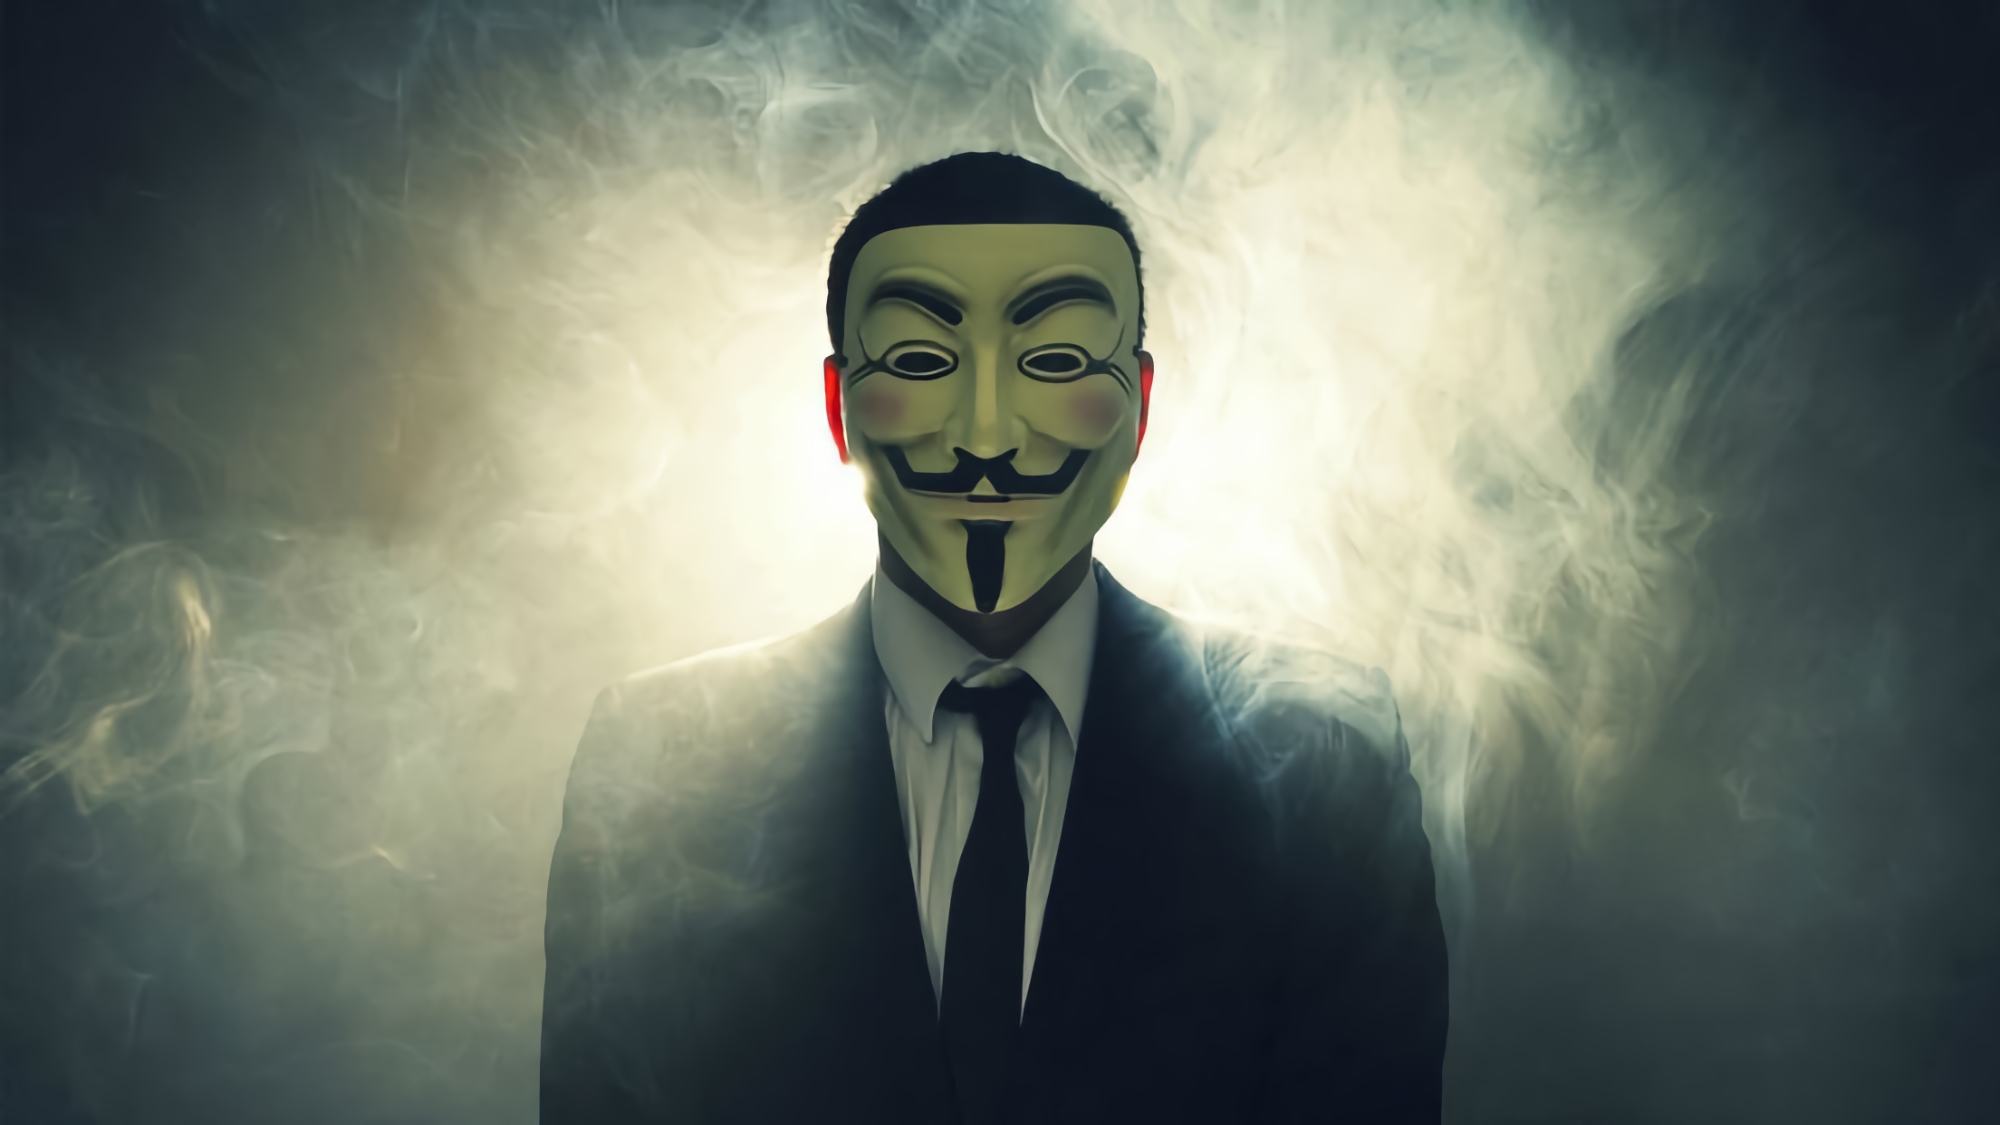 Хакеры Anonymous взломали министерство обороны рф и слили данные более 300 000 человек, которые будут мобилизованы